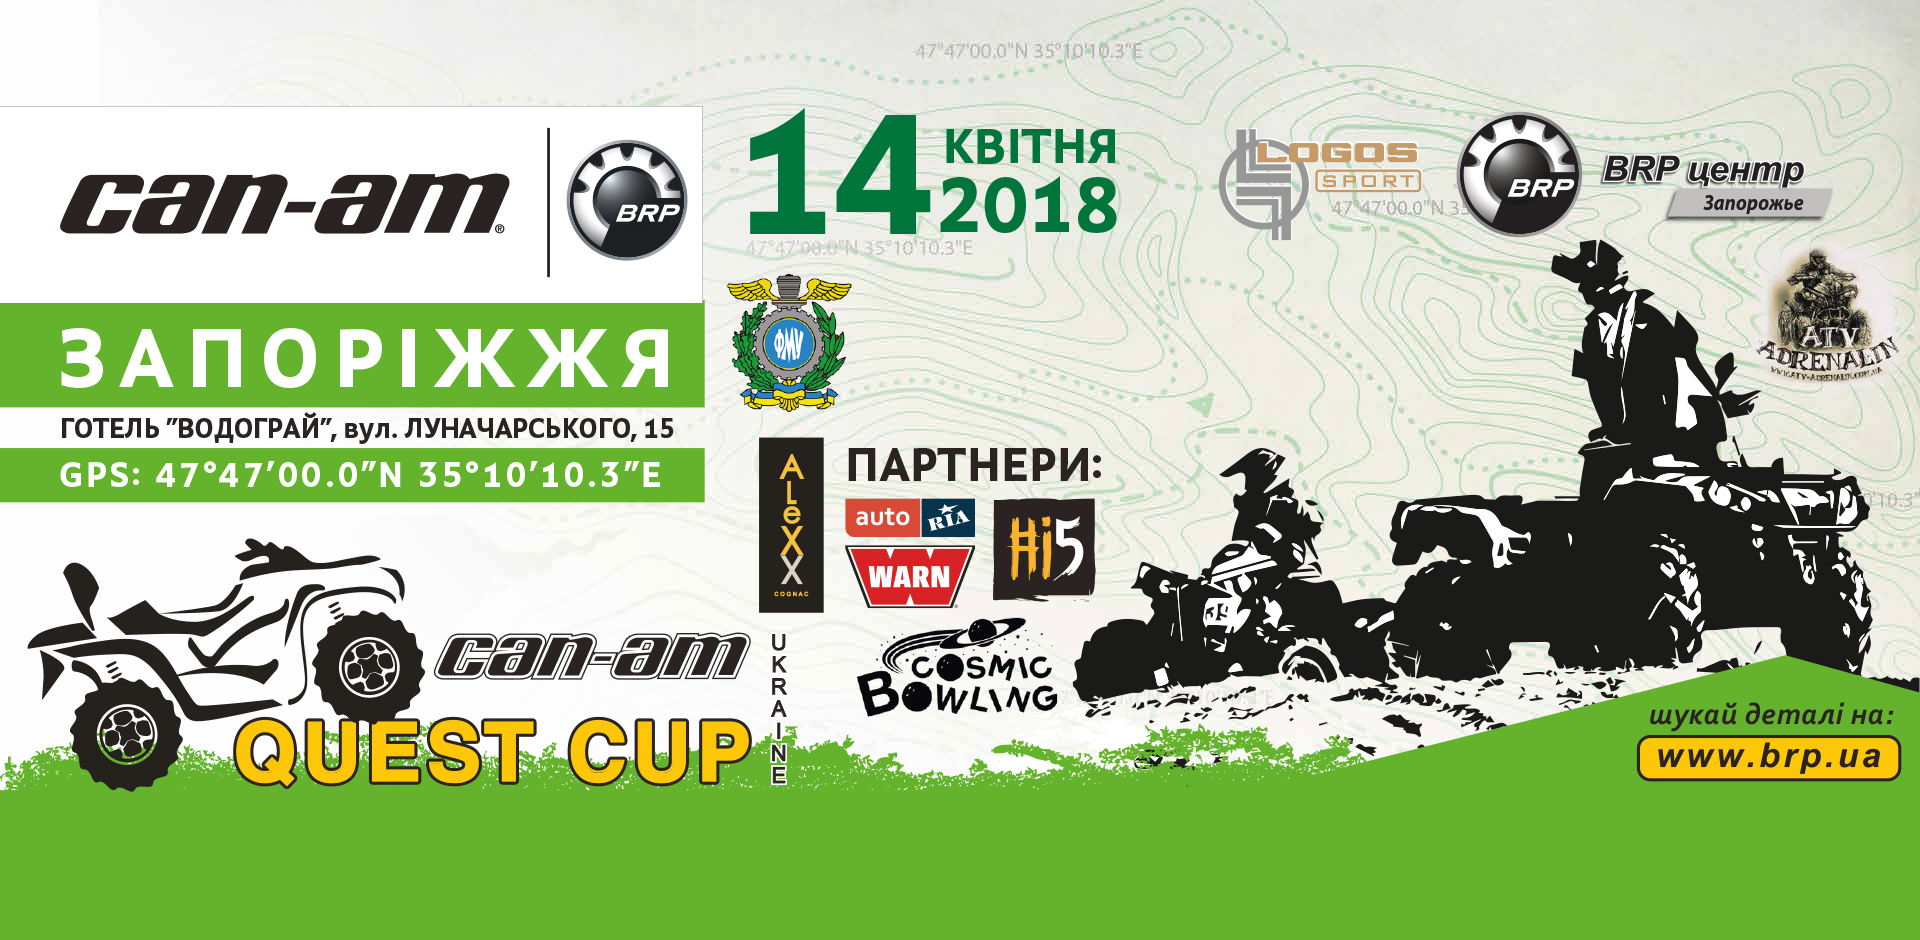 14/04 – 1-й етап серії «CAN-AM QUEST CUP 2018»! Запоріжжя.